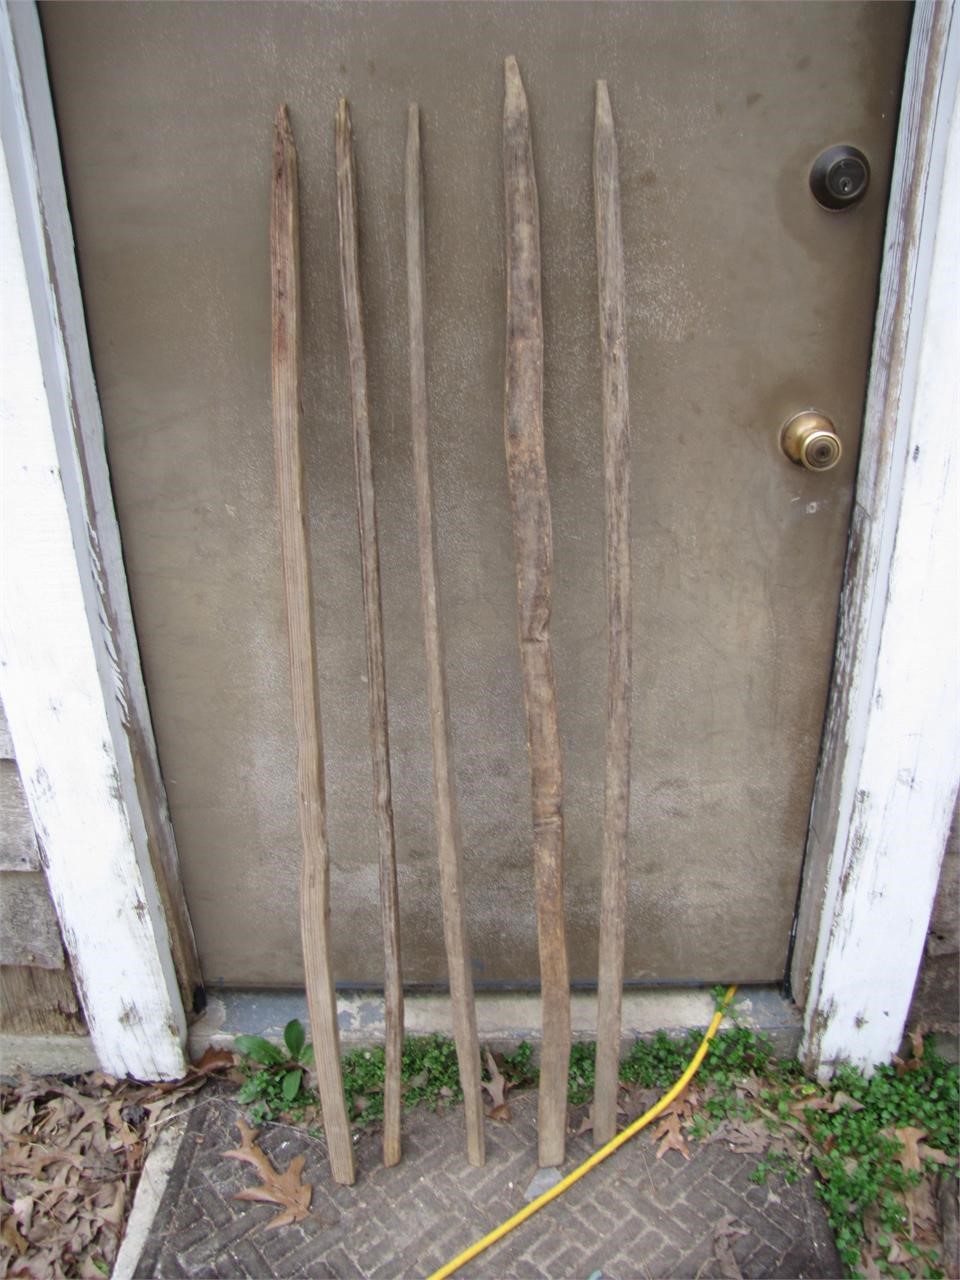 5 Antique Hand-Made Tobacco Sticks